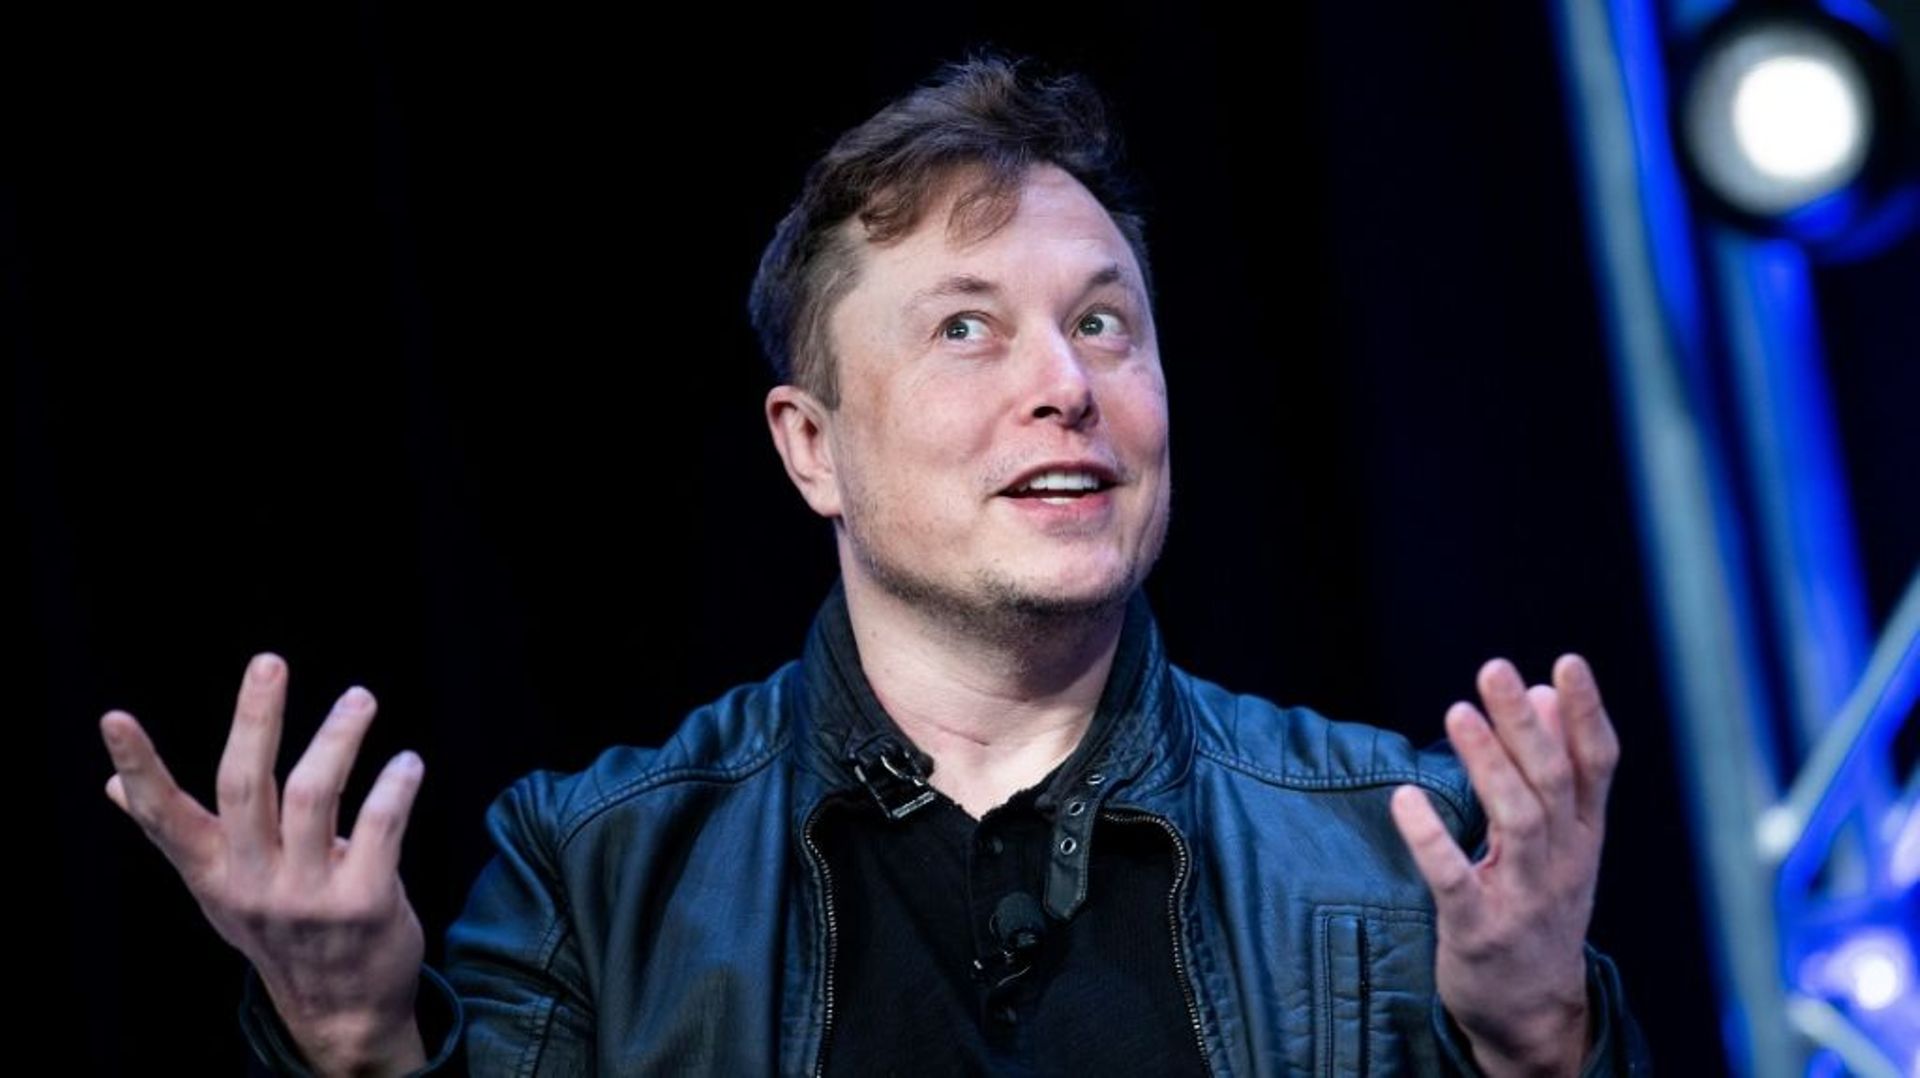 Les analystes financiers se perdaient en conjectures lundi sur les intentions d'Elon Musk au sujet de Twitter